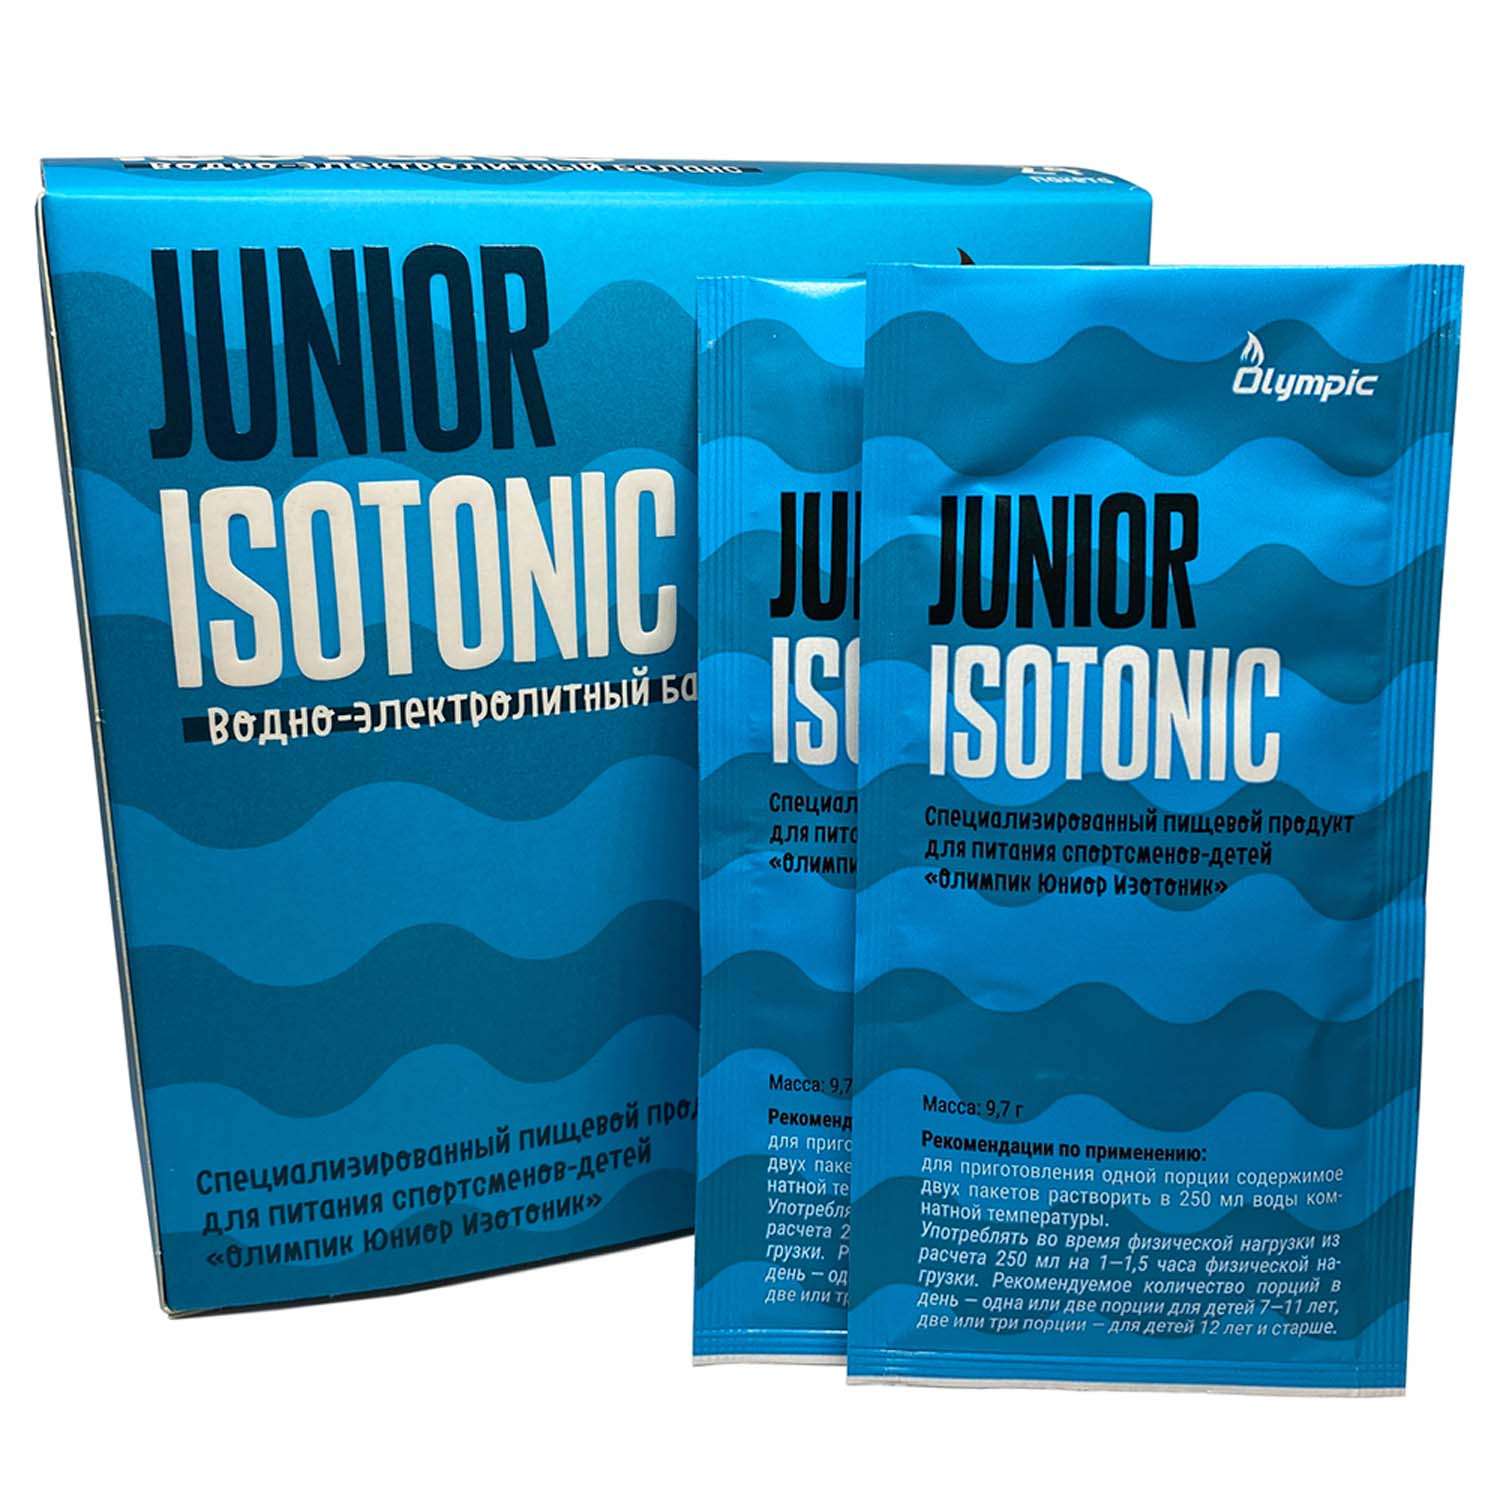 Изотоник Olympic Junior Isotonic 9.7г*24пакетика - фото 2